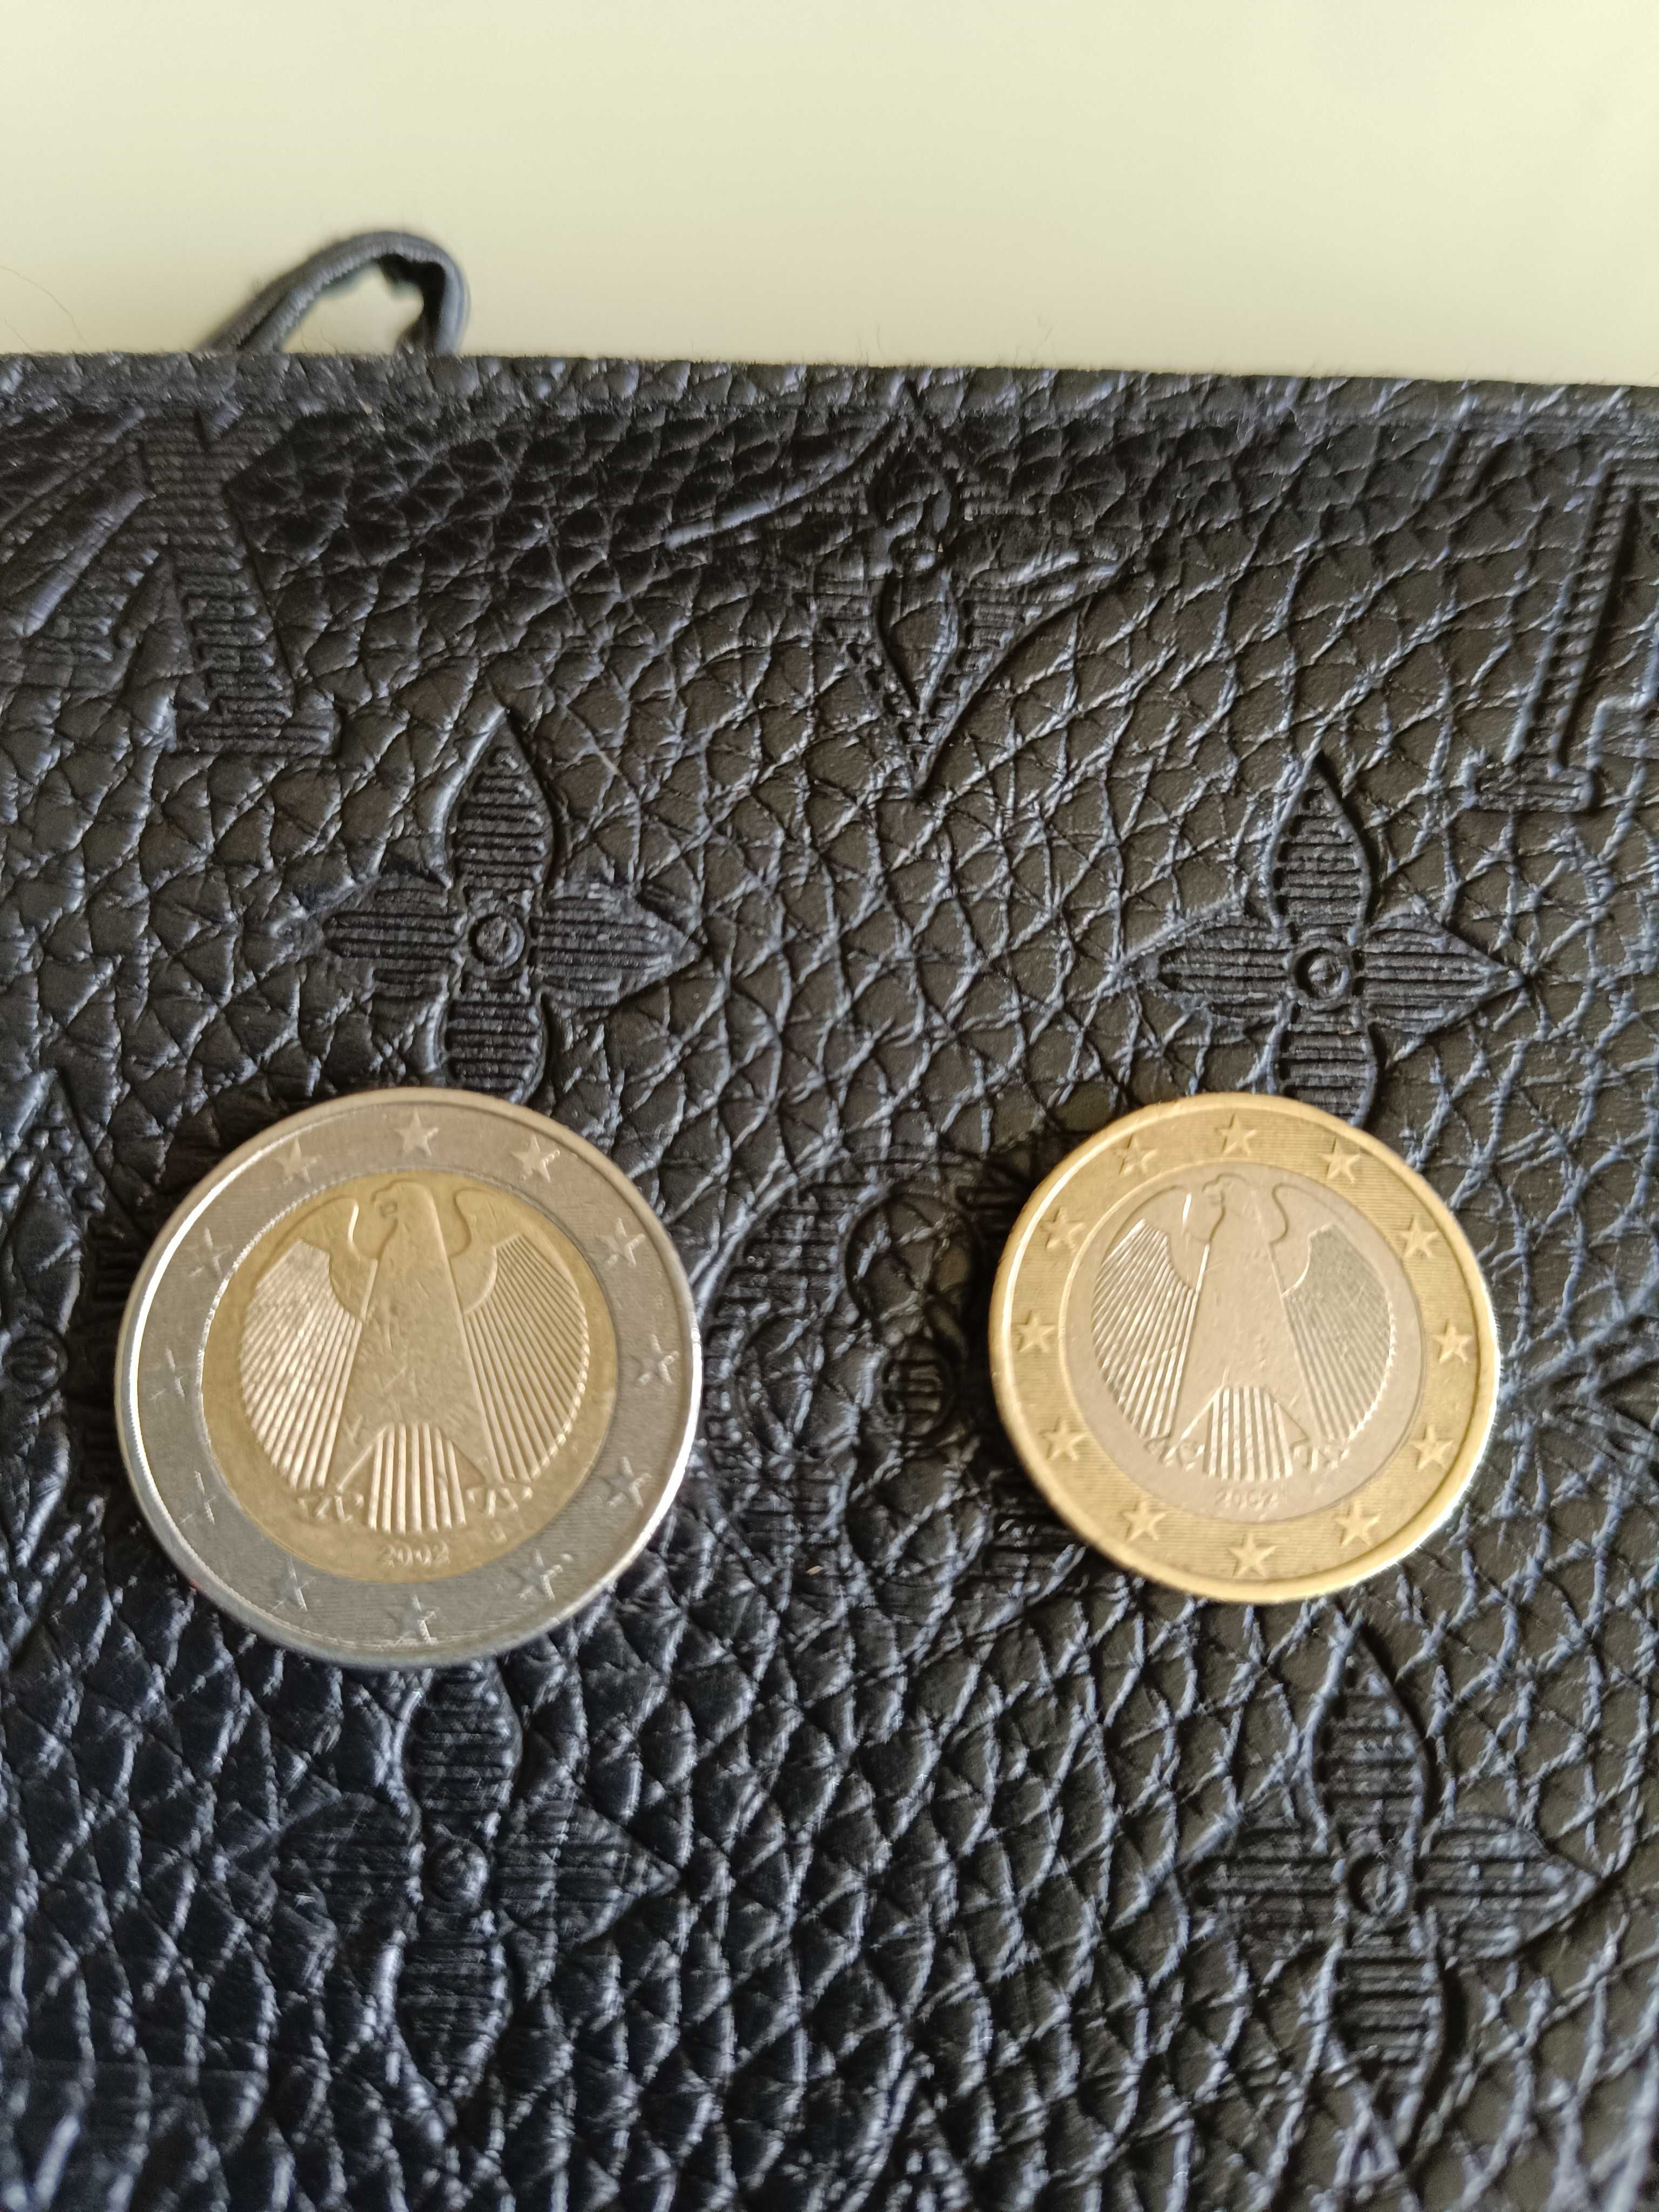 Monede rare,2€ și 1€